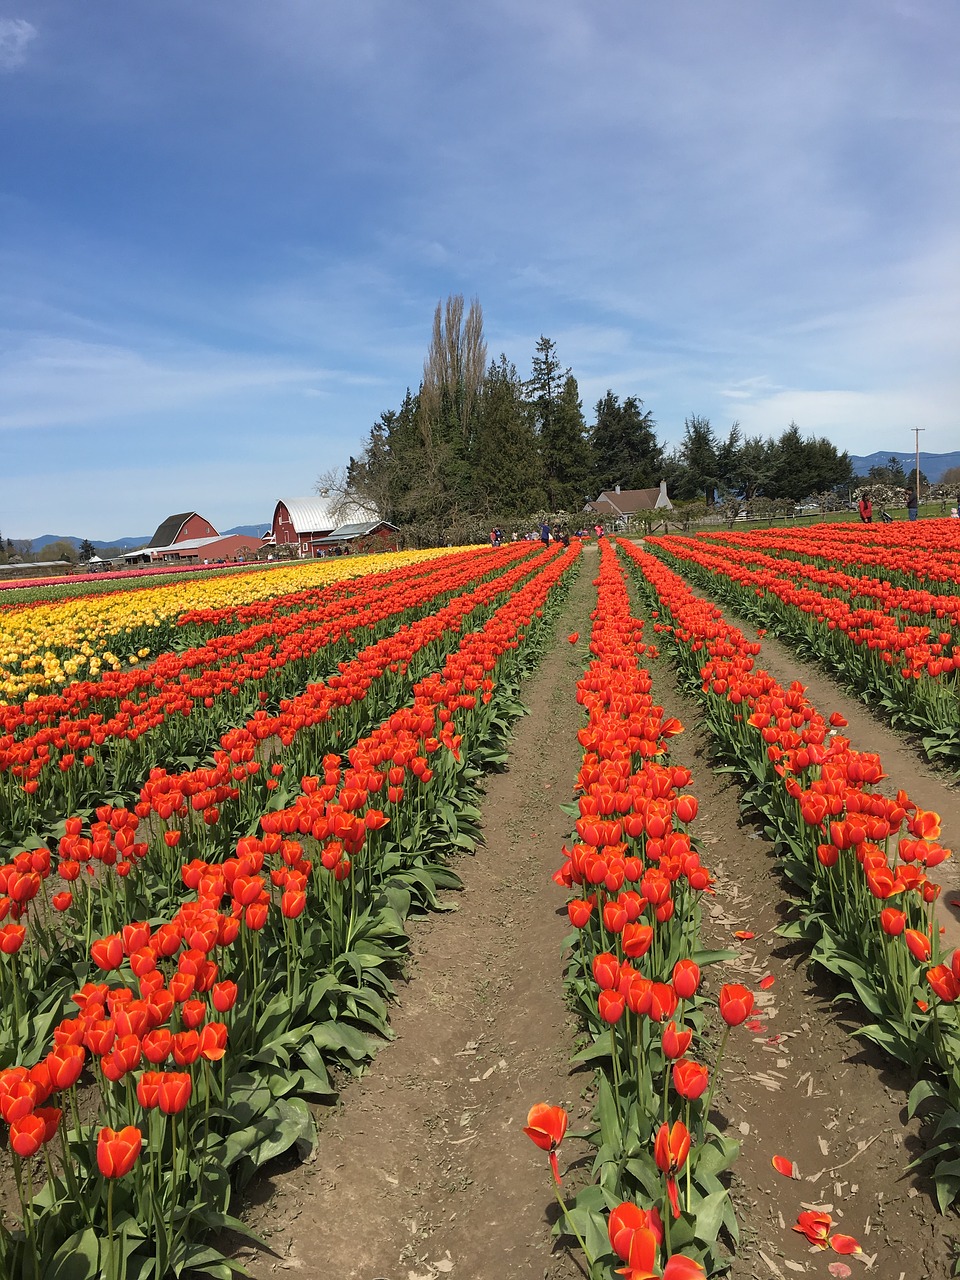 red yellow tulips free photo